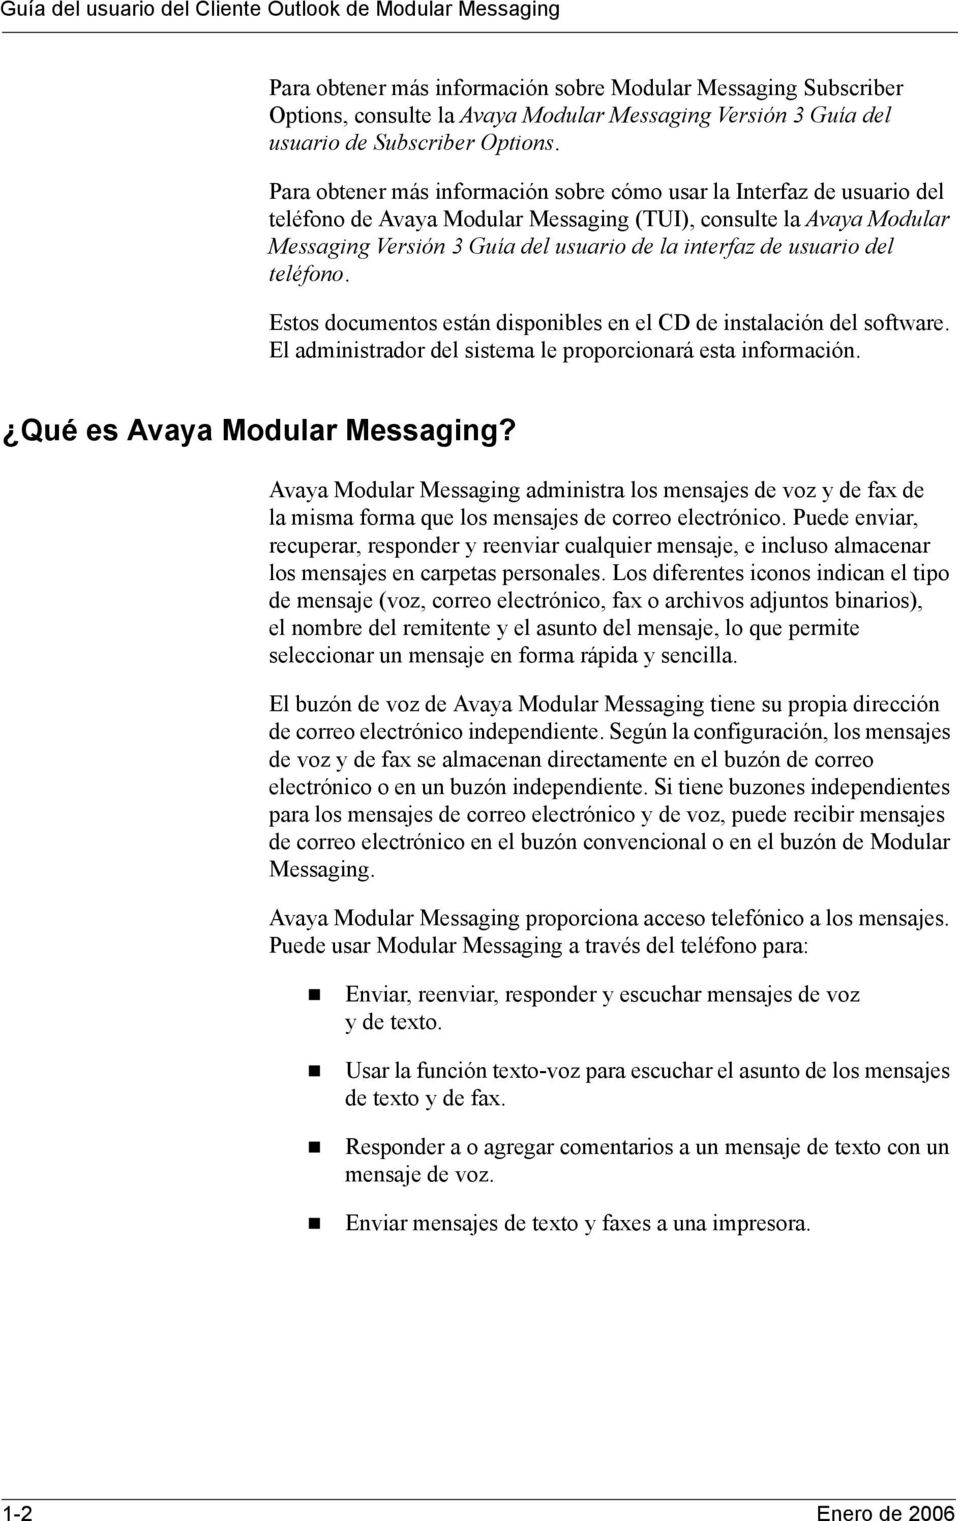 Para obtener más información sobre cómo usar la Interfaz de usuario del teléfono de Avaya Modular Messaging (TUI), consulte la Avaya Modular Messaging Versión 3 Guía del usuario de la interfaz de